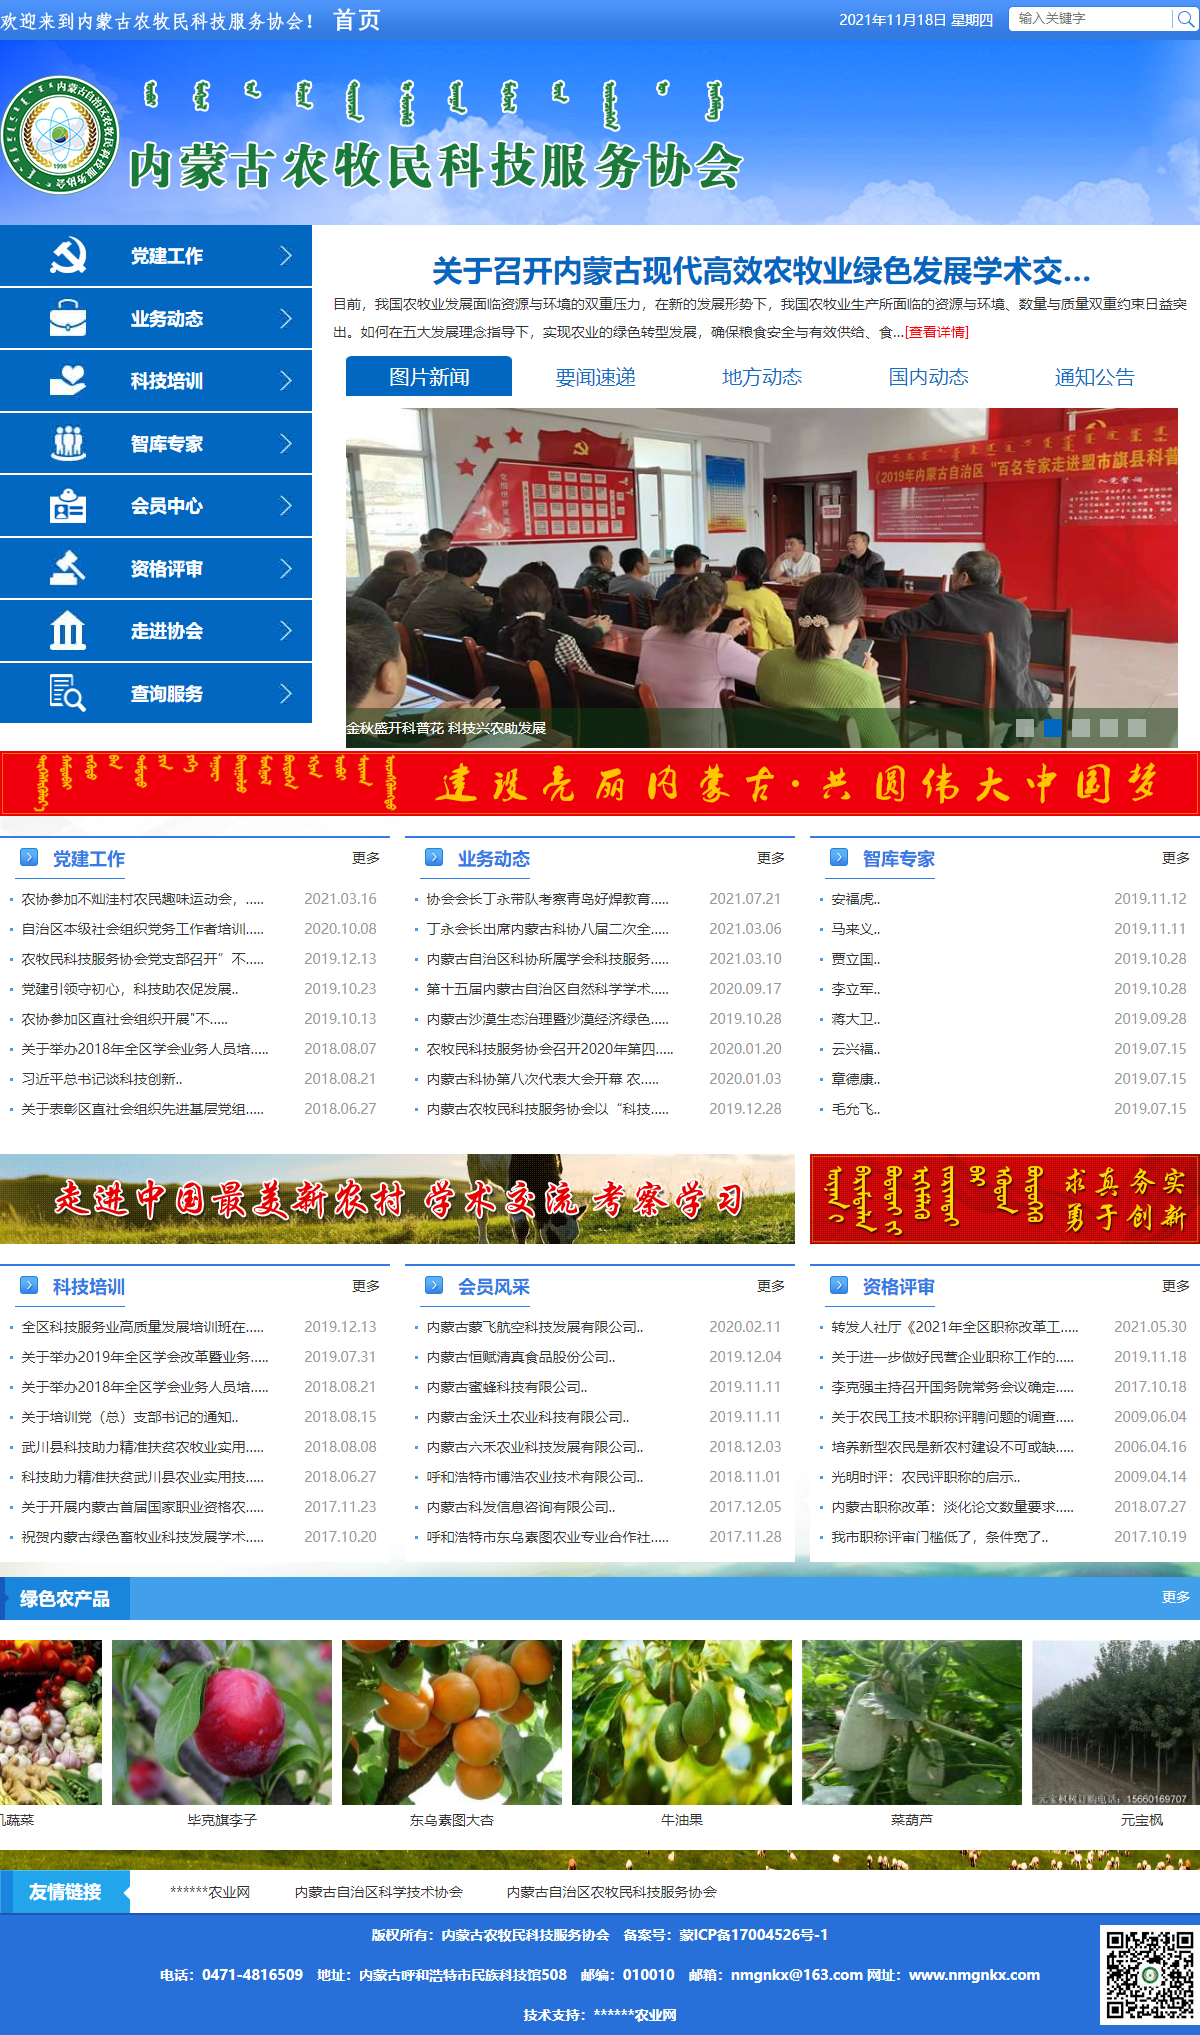 内蒙古农牧民科技服务协会网站案例